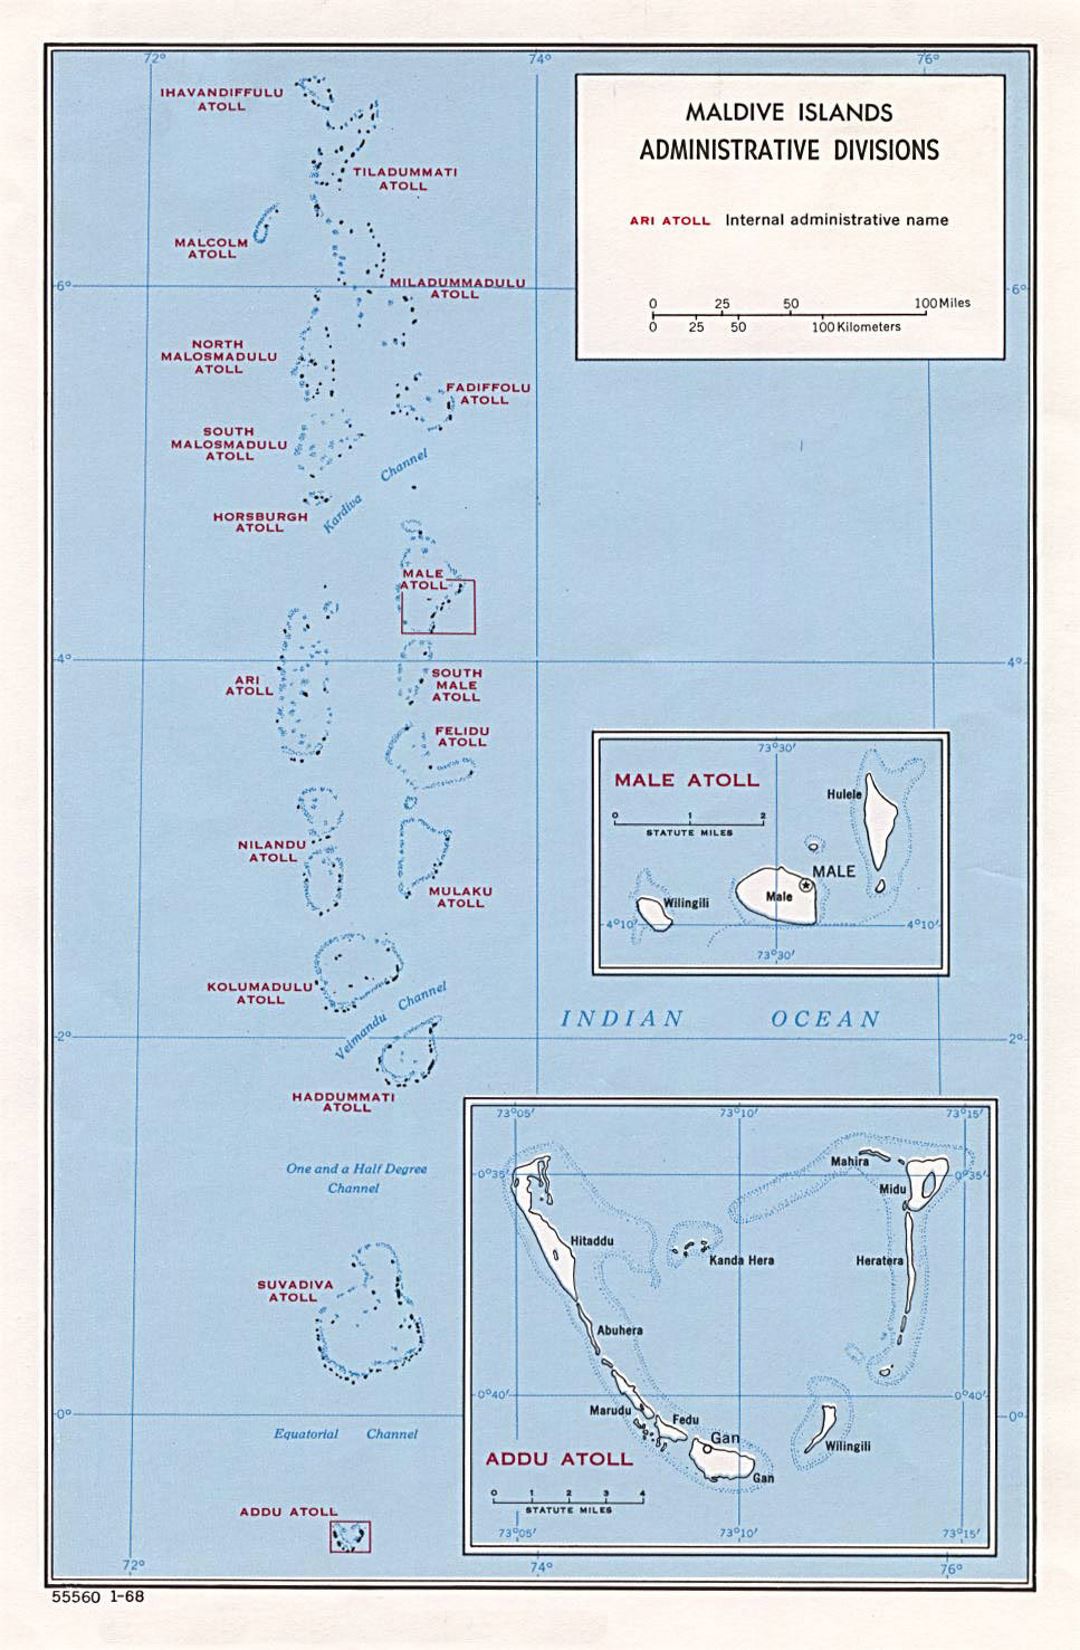 Детальная карта административных делений Мальдив - 1968